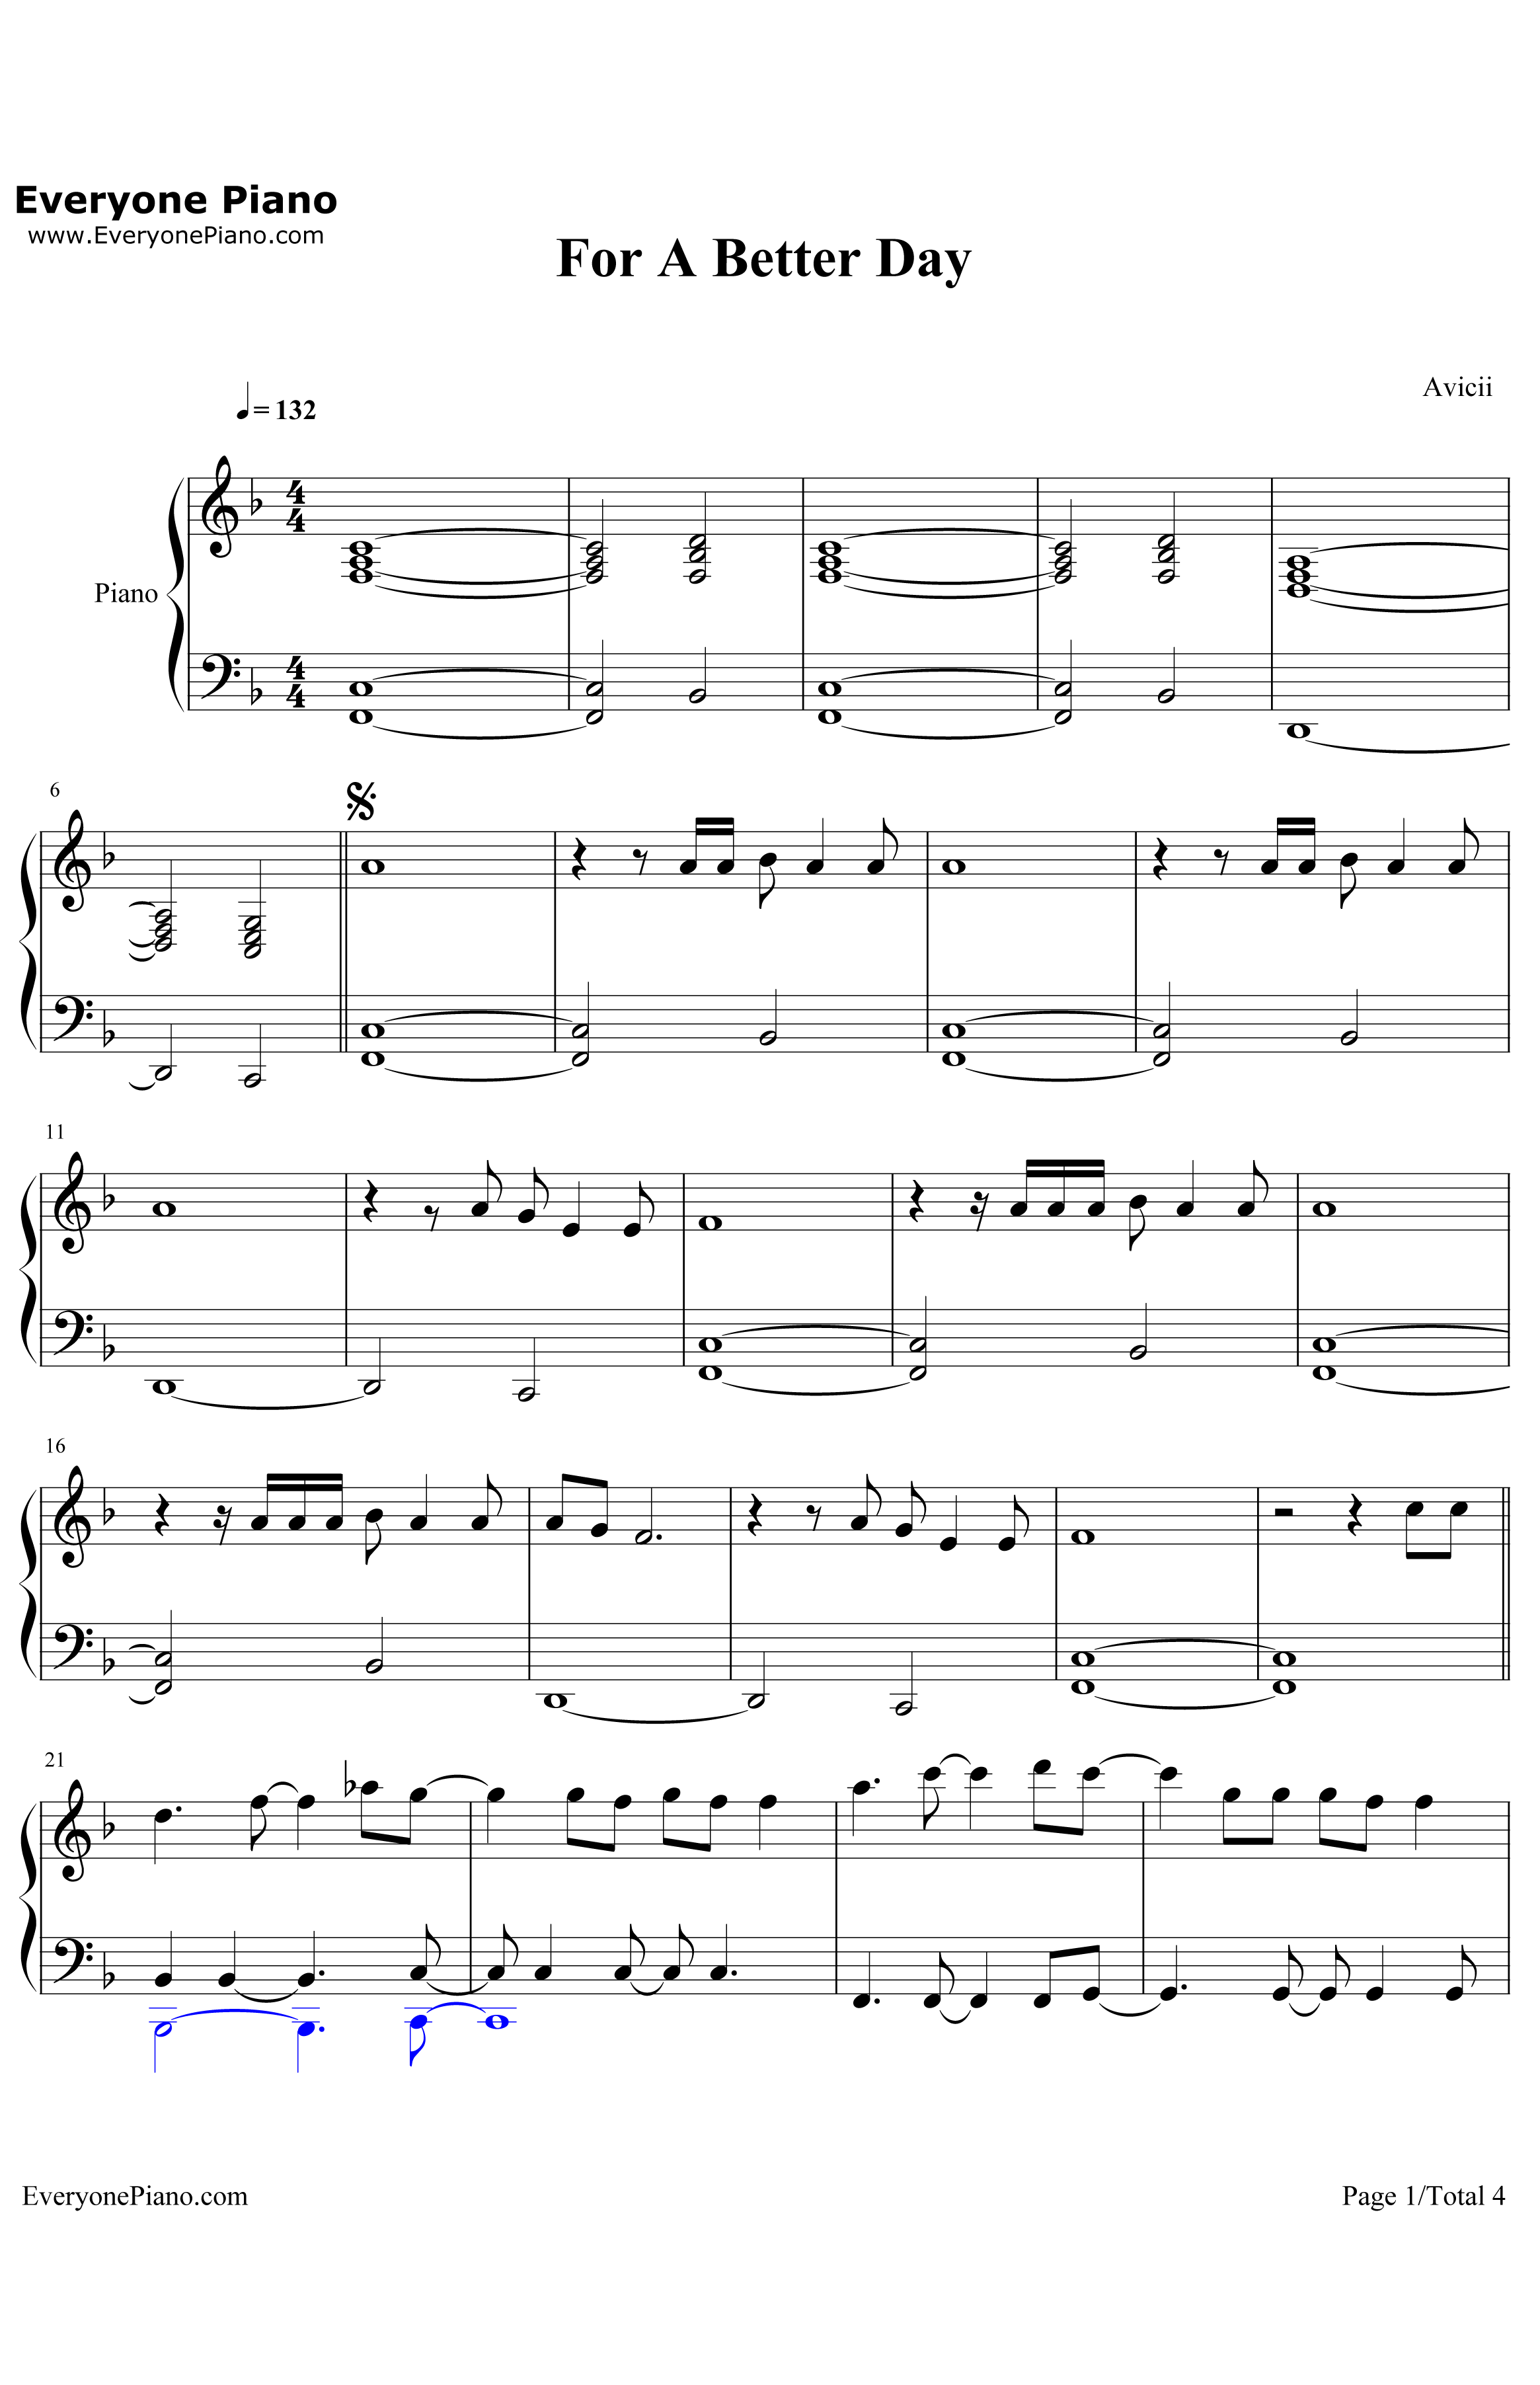 ForaBetterDay钢琴谱-Avicii1